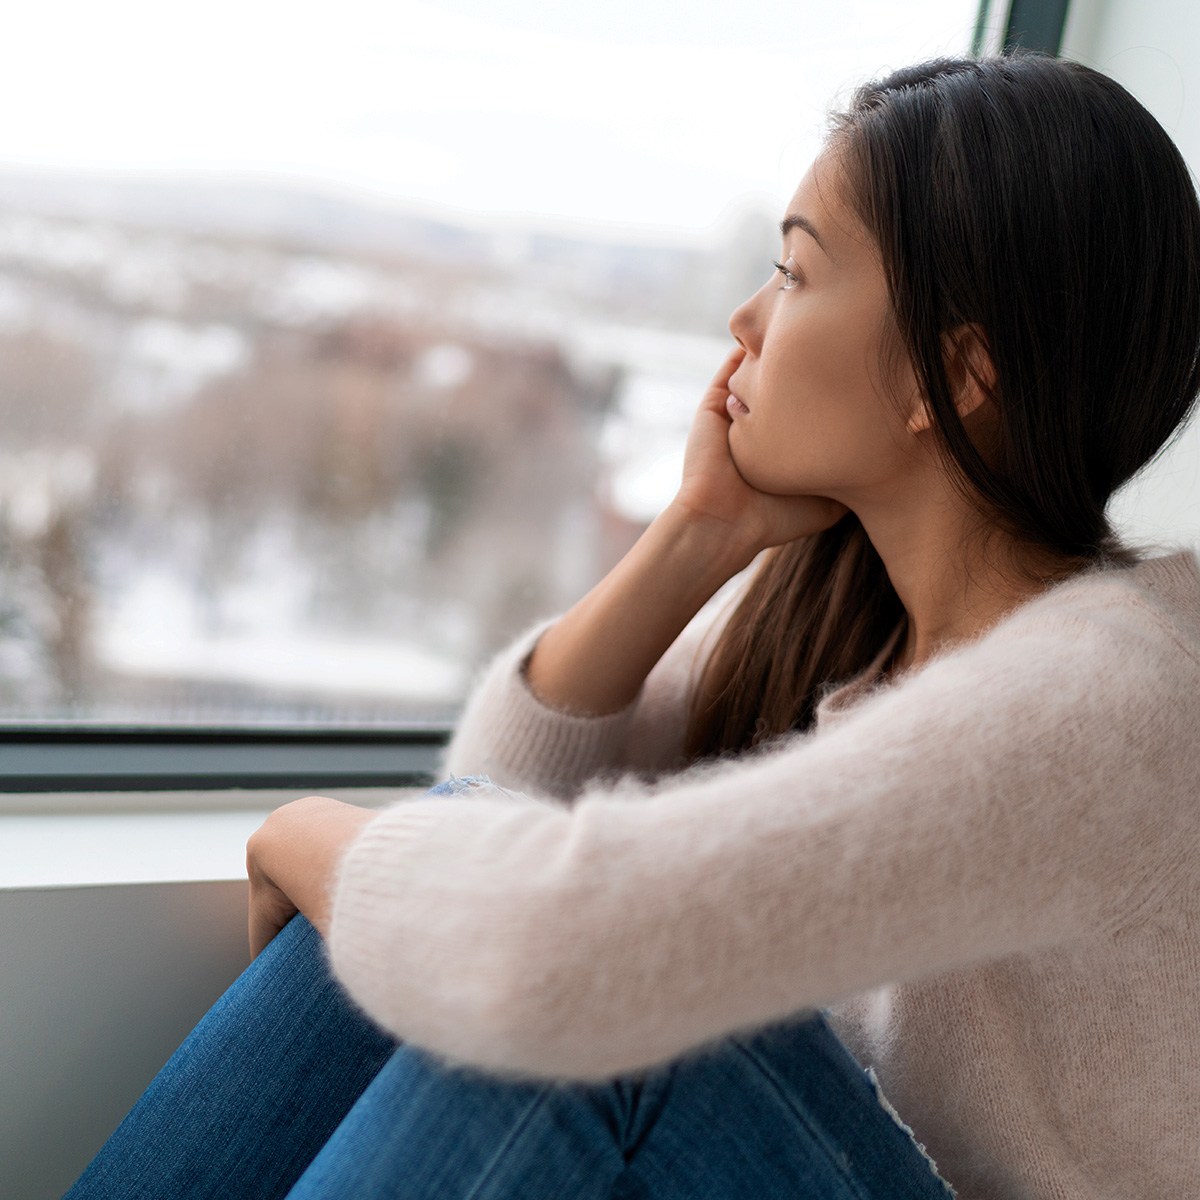 Una mujer contempla con mirada triste el exterior a través de su ventana.